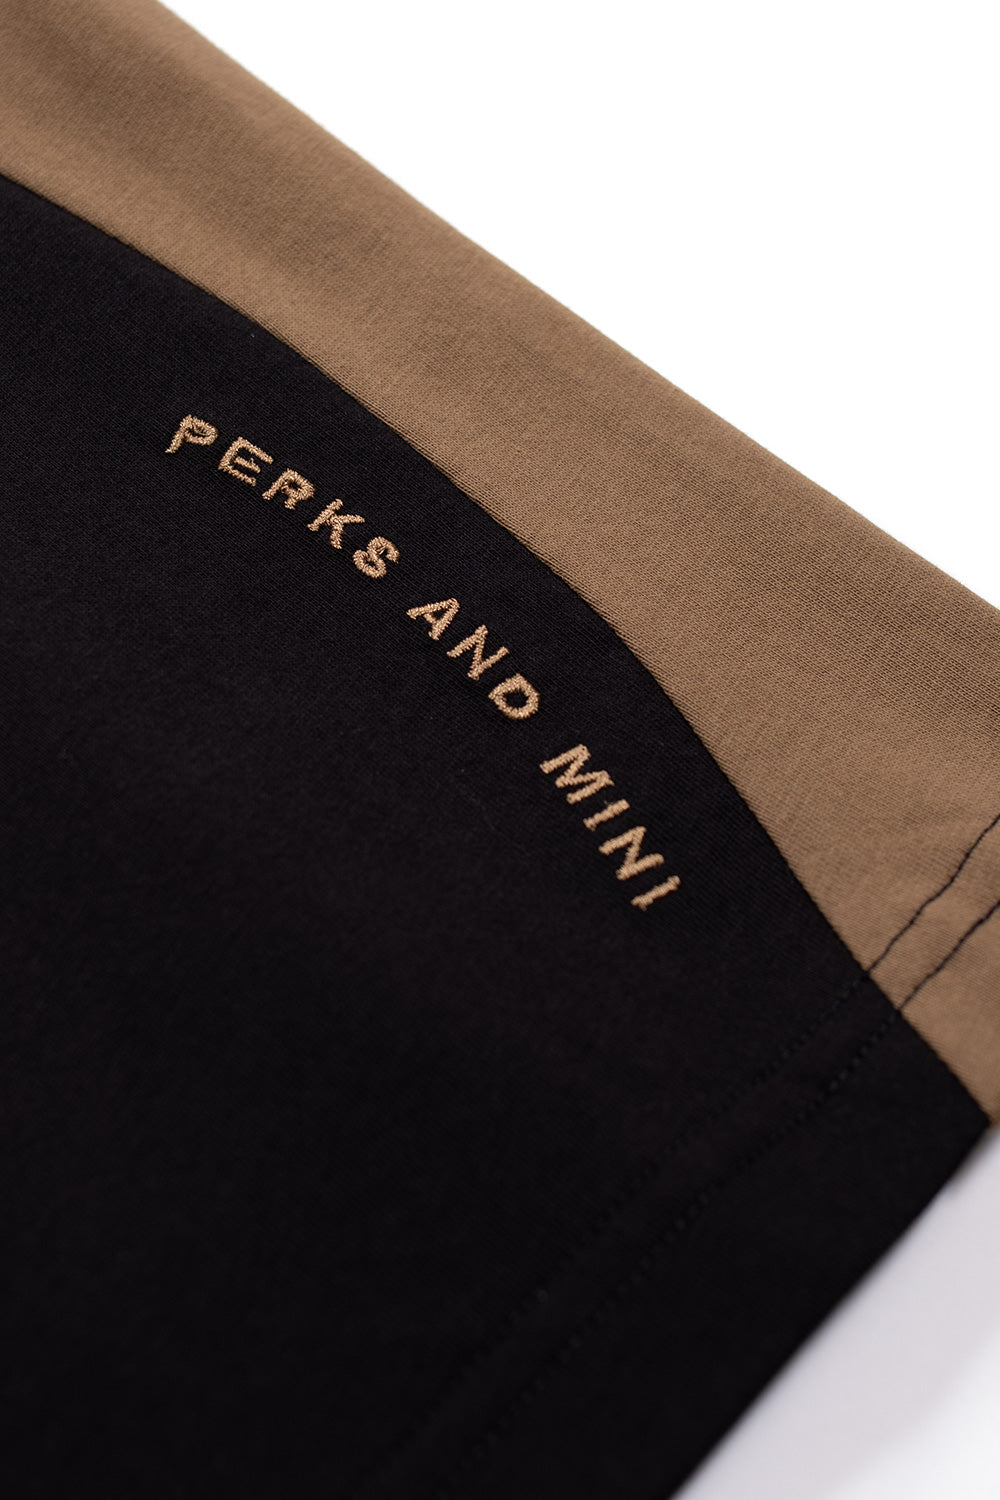 Perks And Mini P. World Panel Mock Neck T-Shirt Black - BONKERS